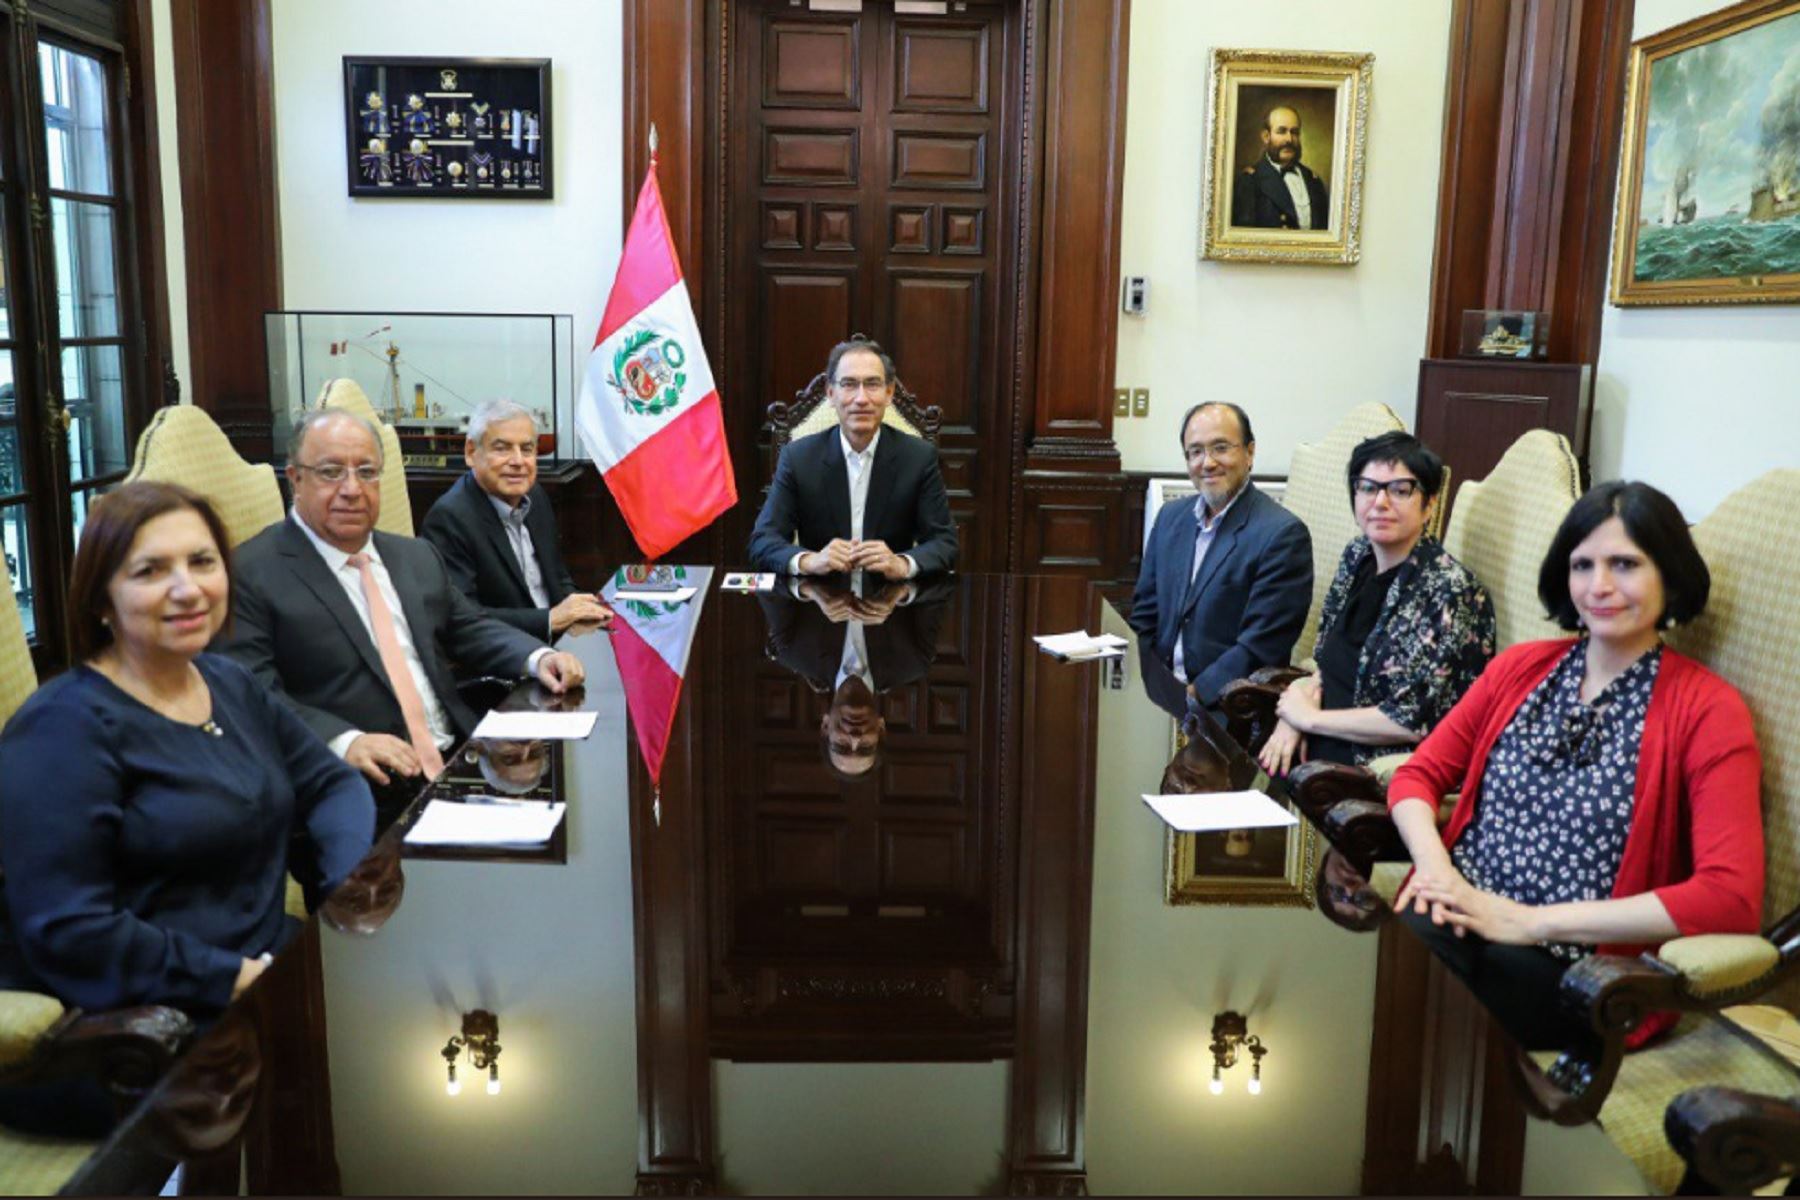 Presidente Vizcarra se reunió con la Comisión de Reforma Política